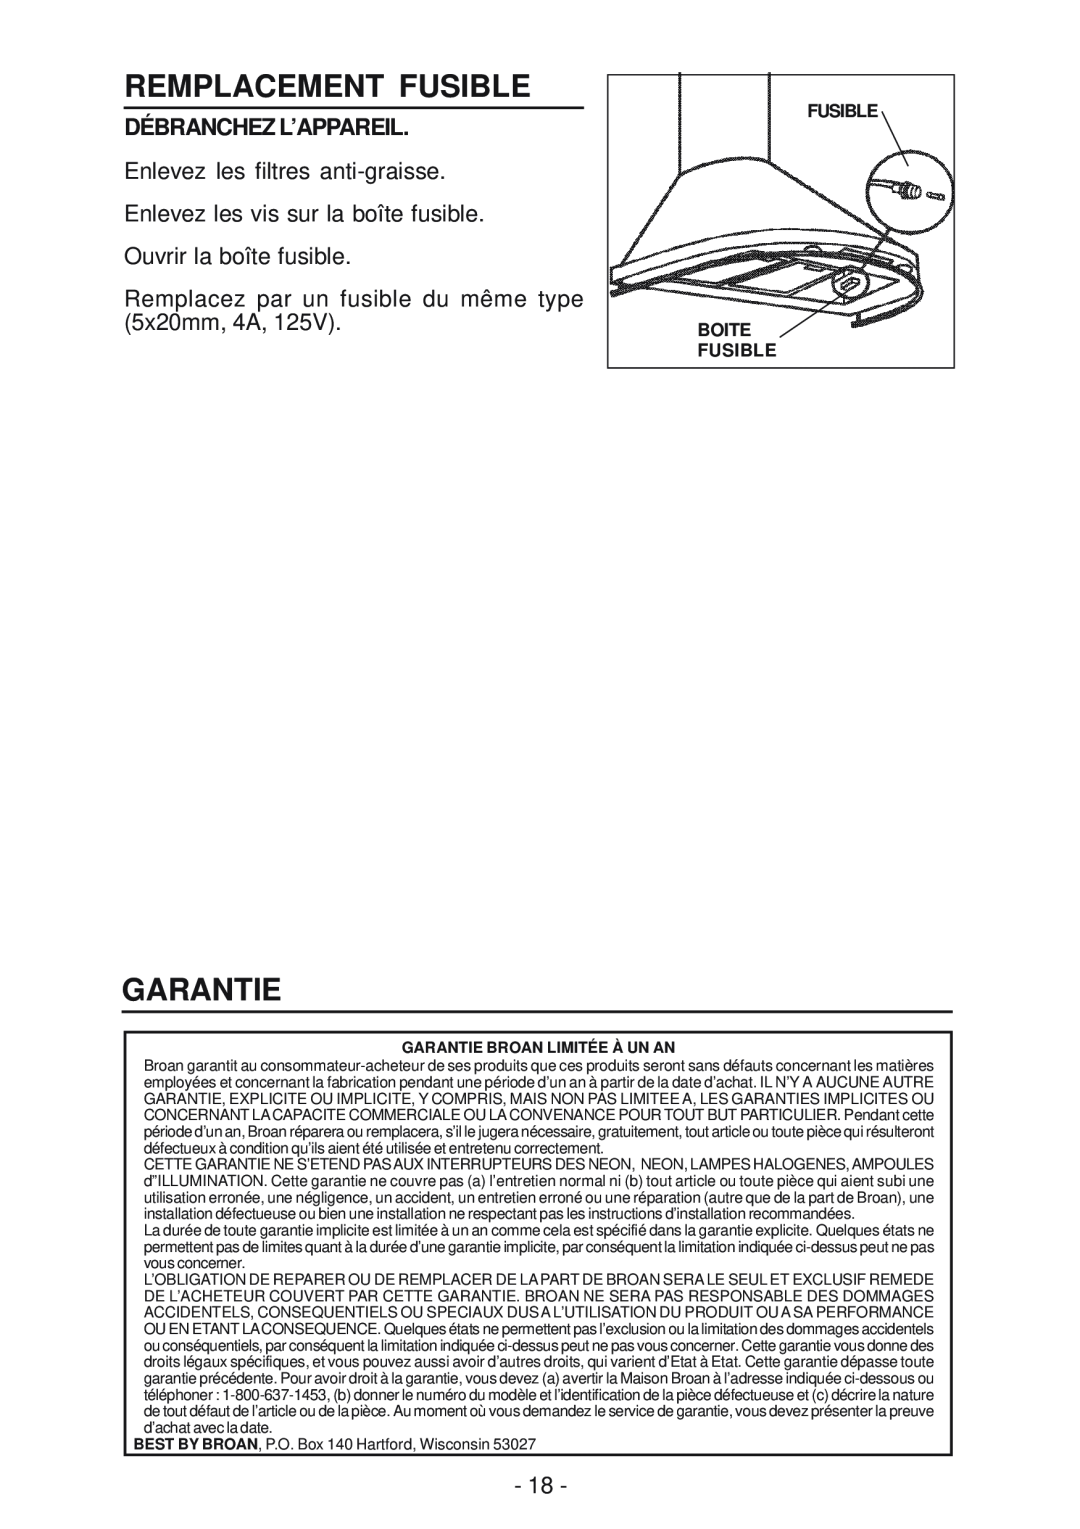 Best K15 manual Remplacement Fusible, Garantie, Débranchez L’Appareil, Fusible Boite Fusible 